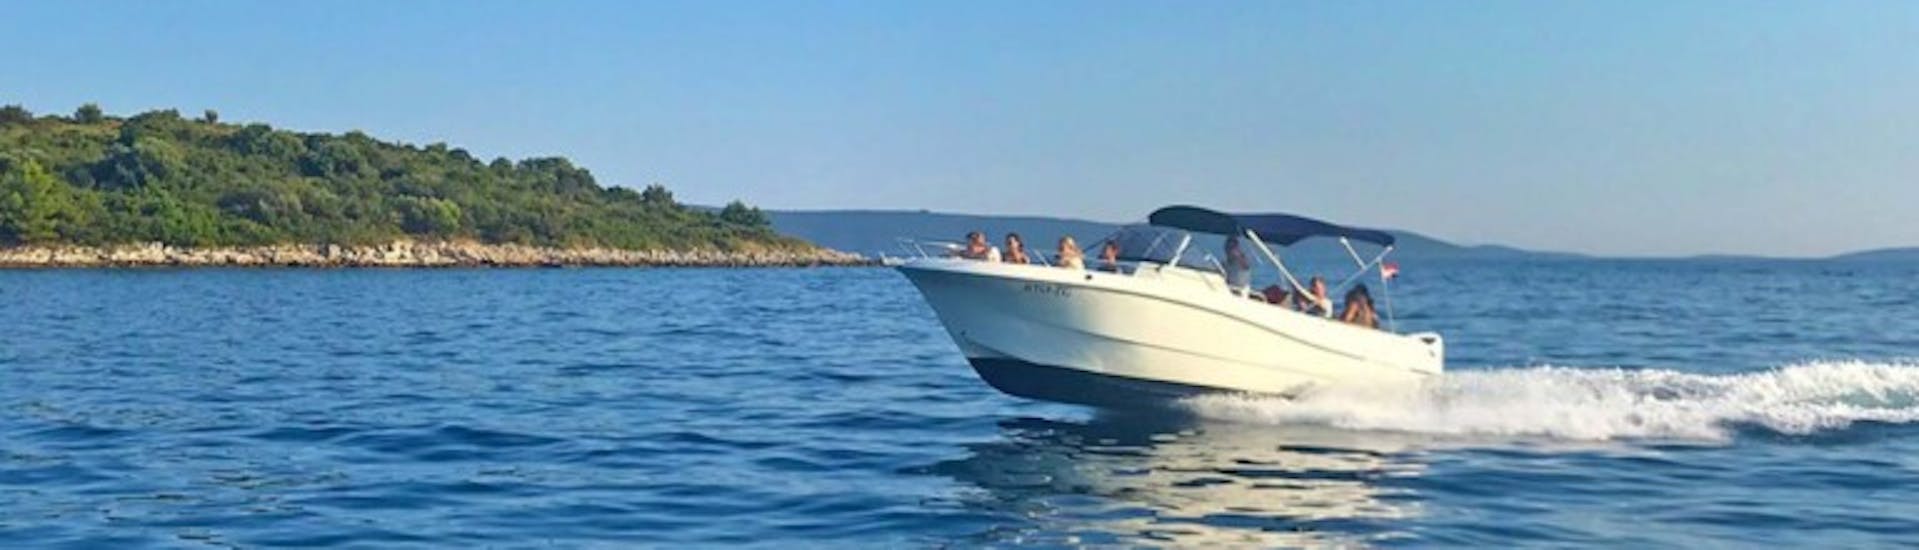 Excursion en bateau privé au lagon bleu depuis Trogir.